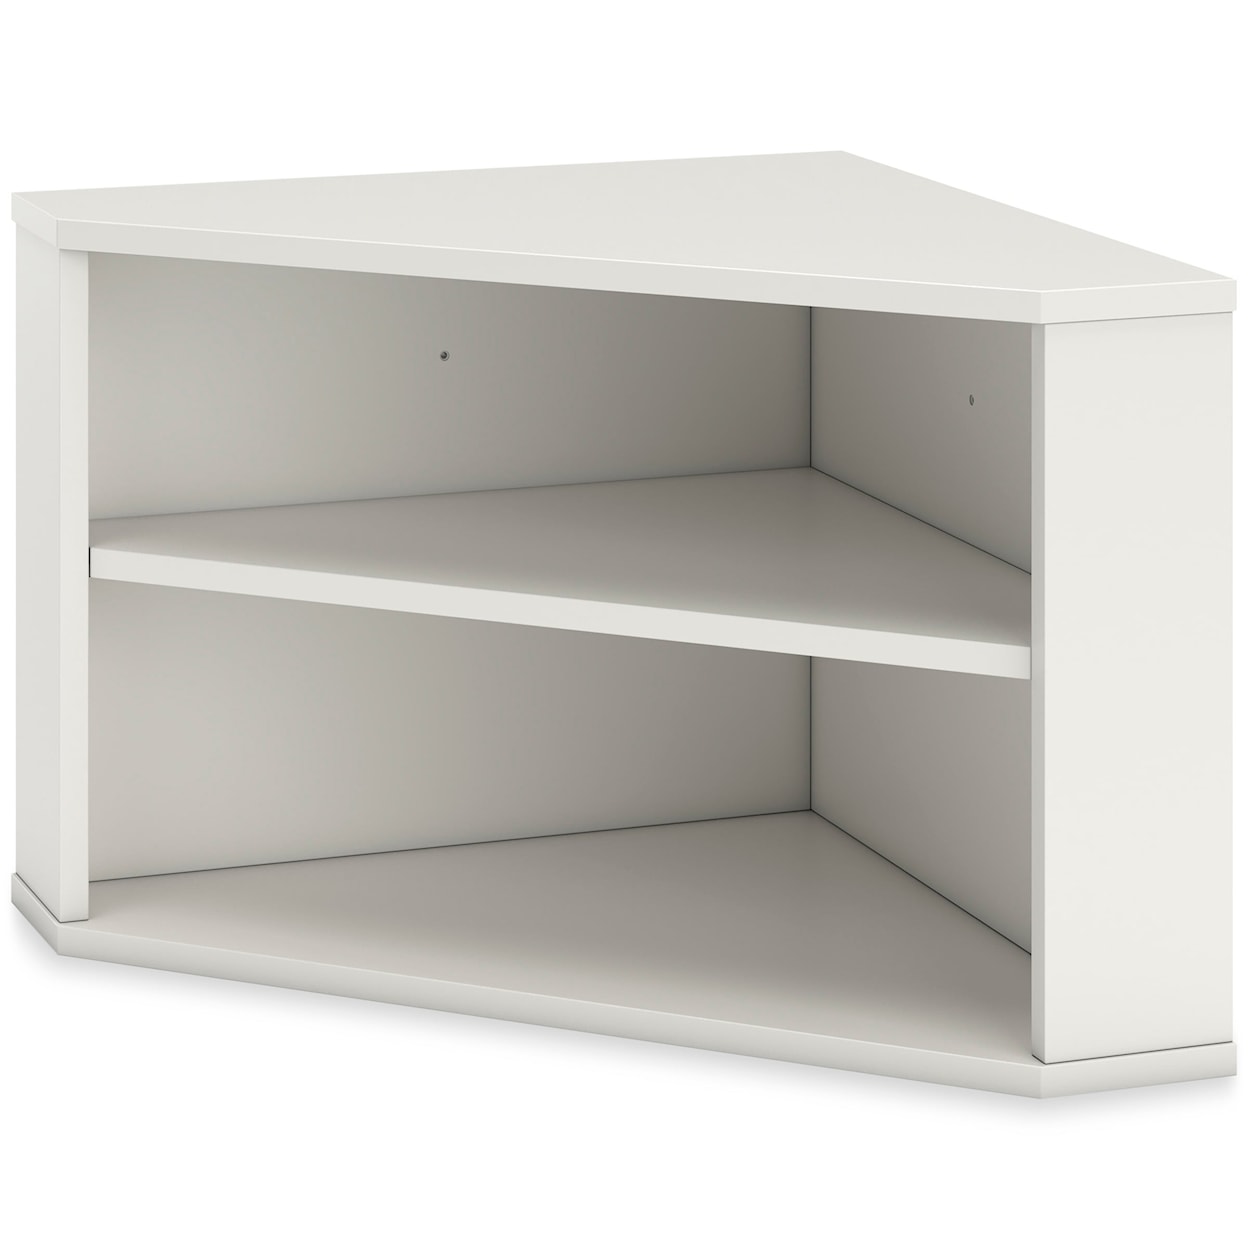 Ashley Furniture Signature Design Grannen Corner Bookcase